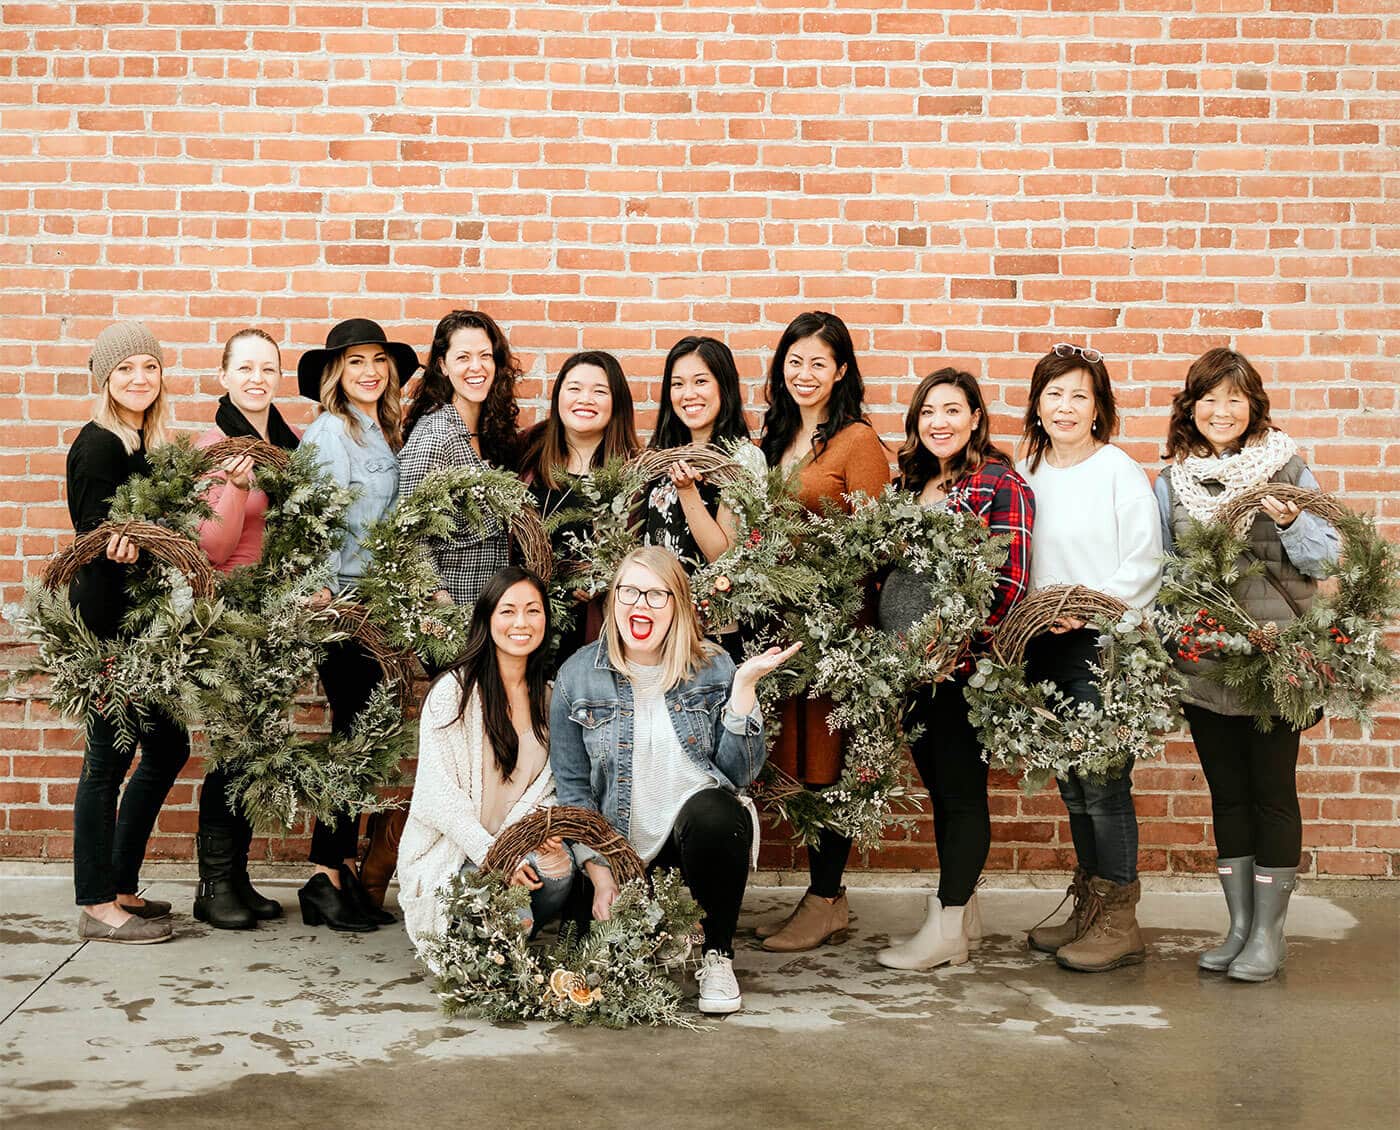 DIY wreath workshop organized by Bloom Sacramento